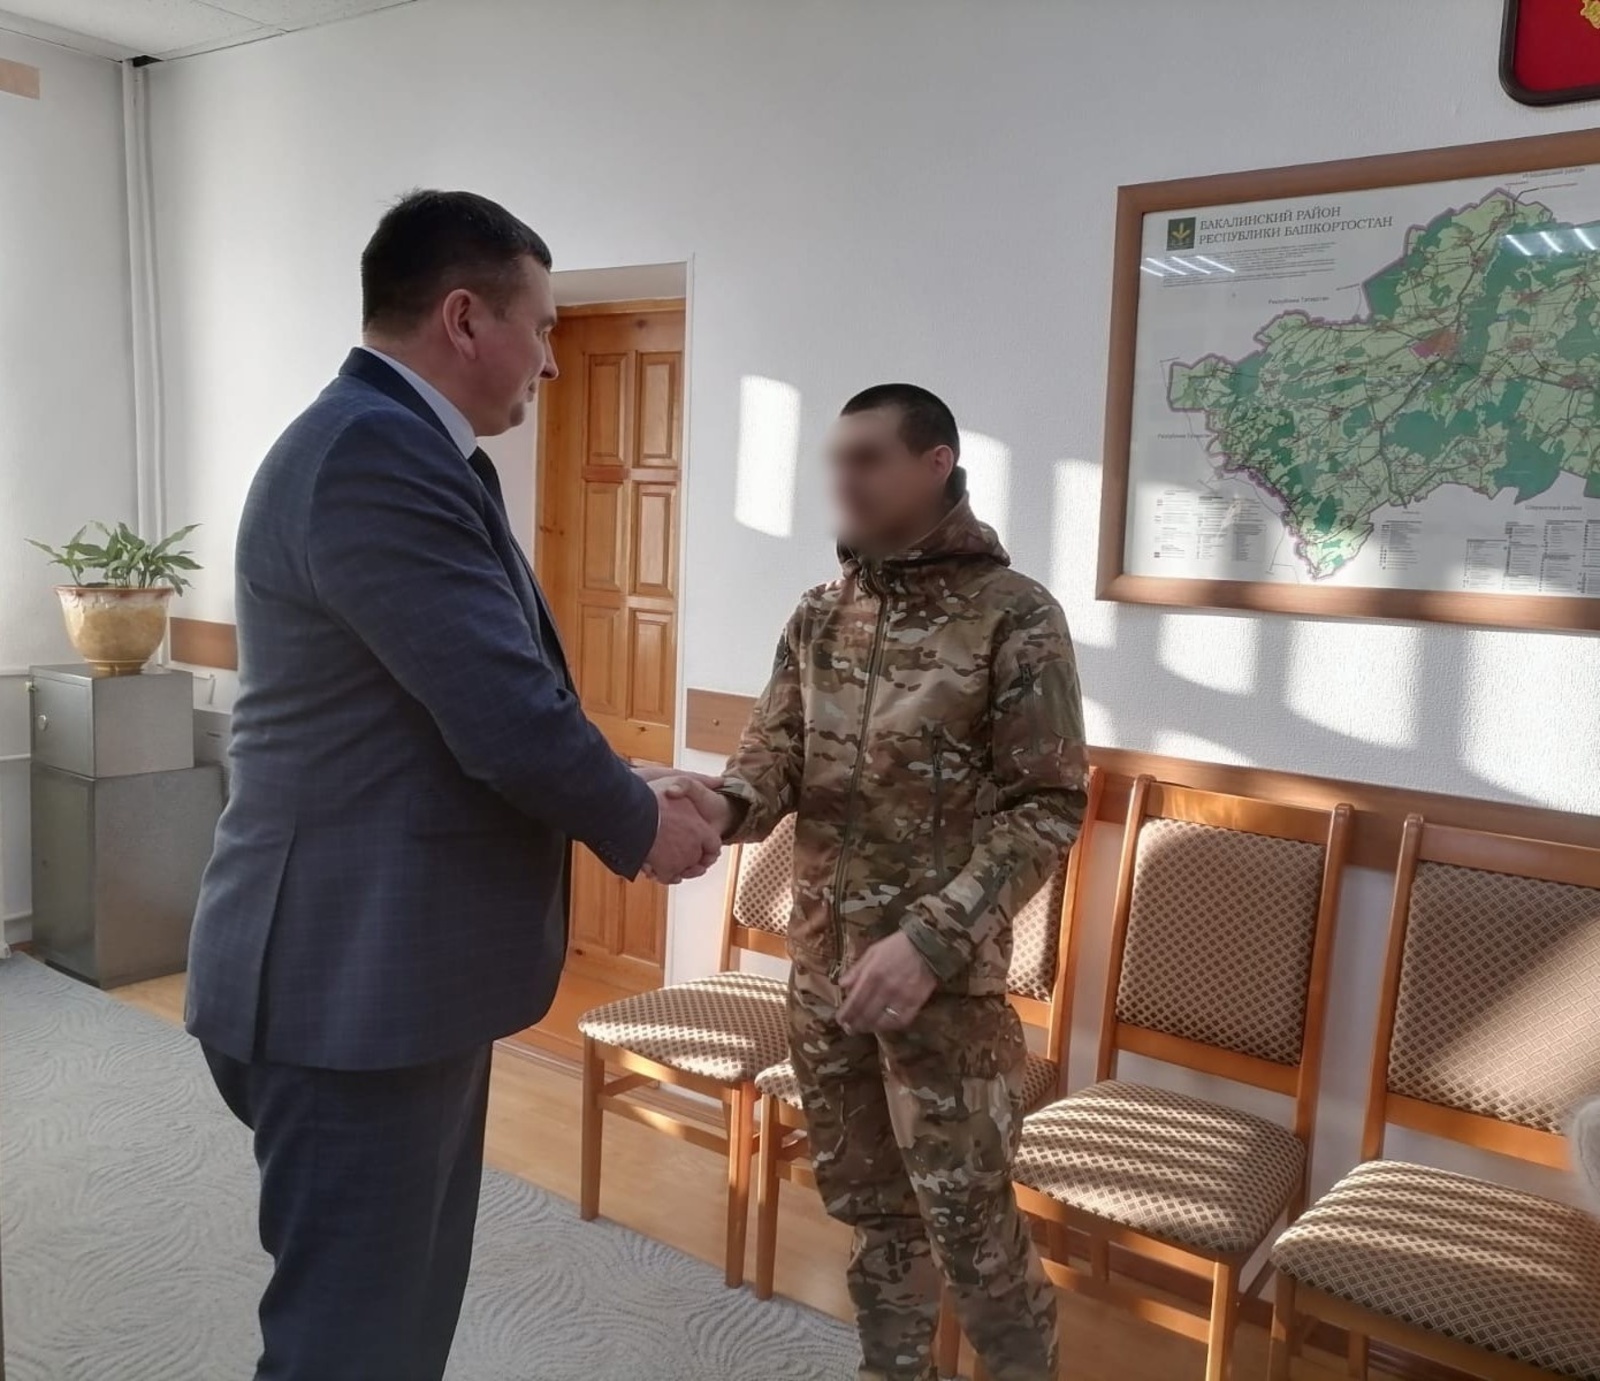 Глава администрации Бакалинского района встретился с бойцом, который находится в краткосрочном отпуске